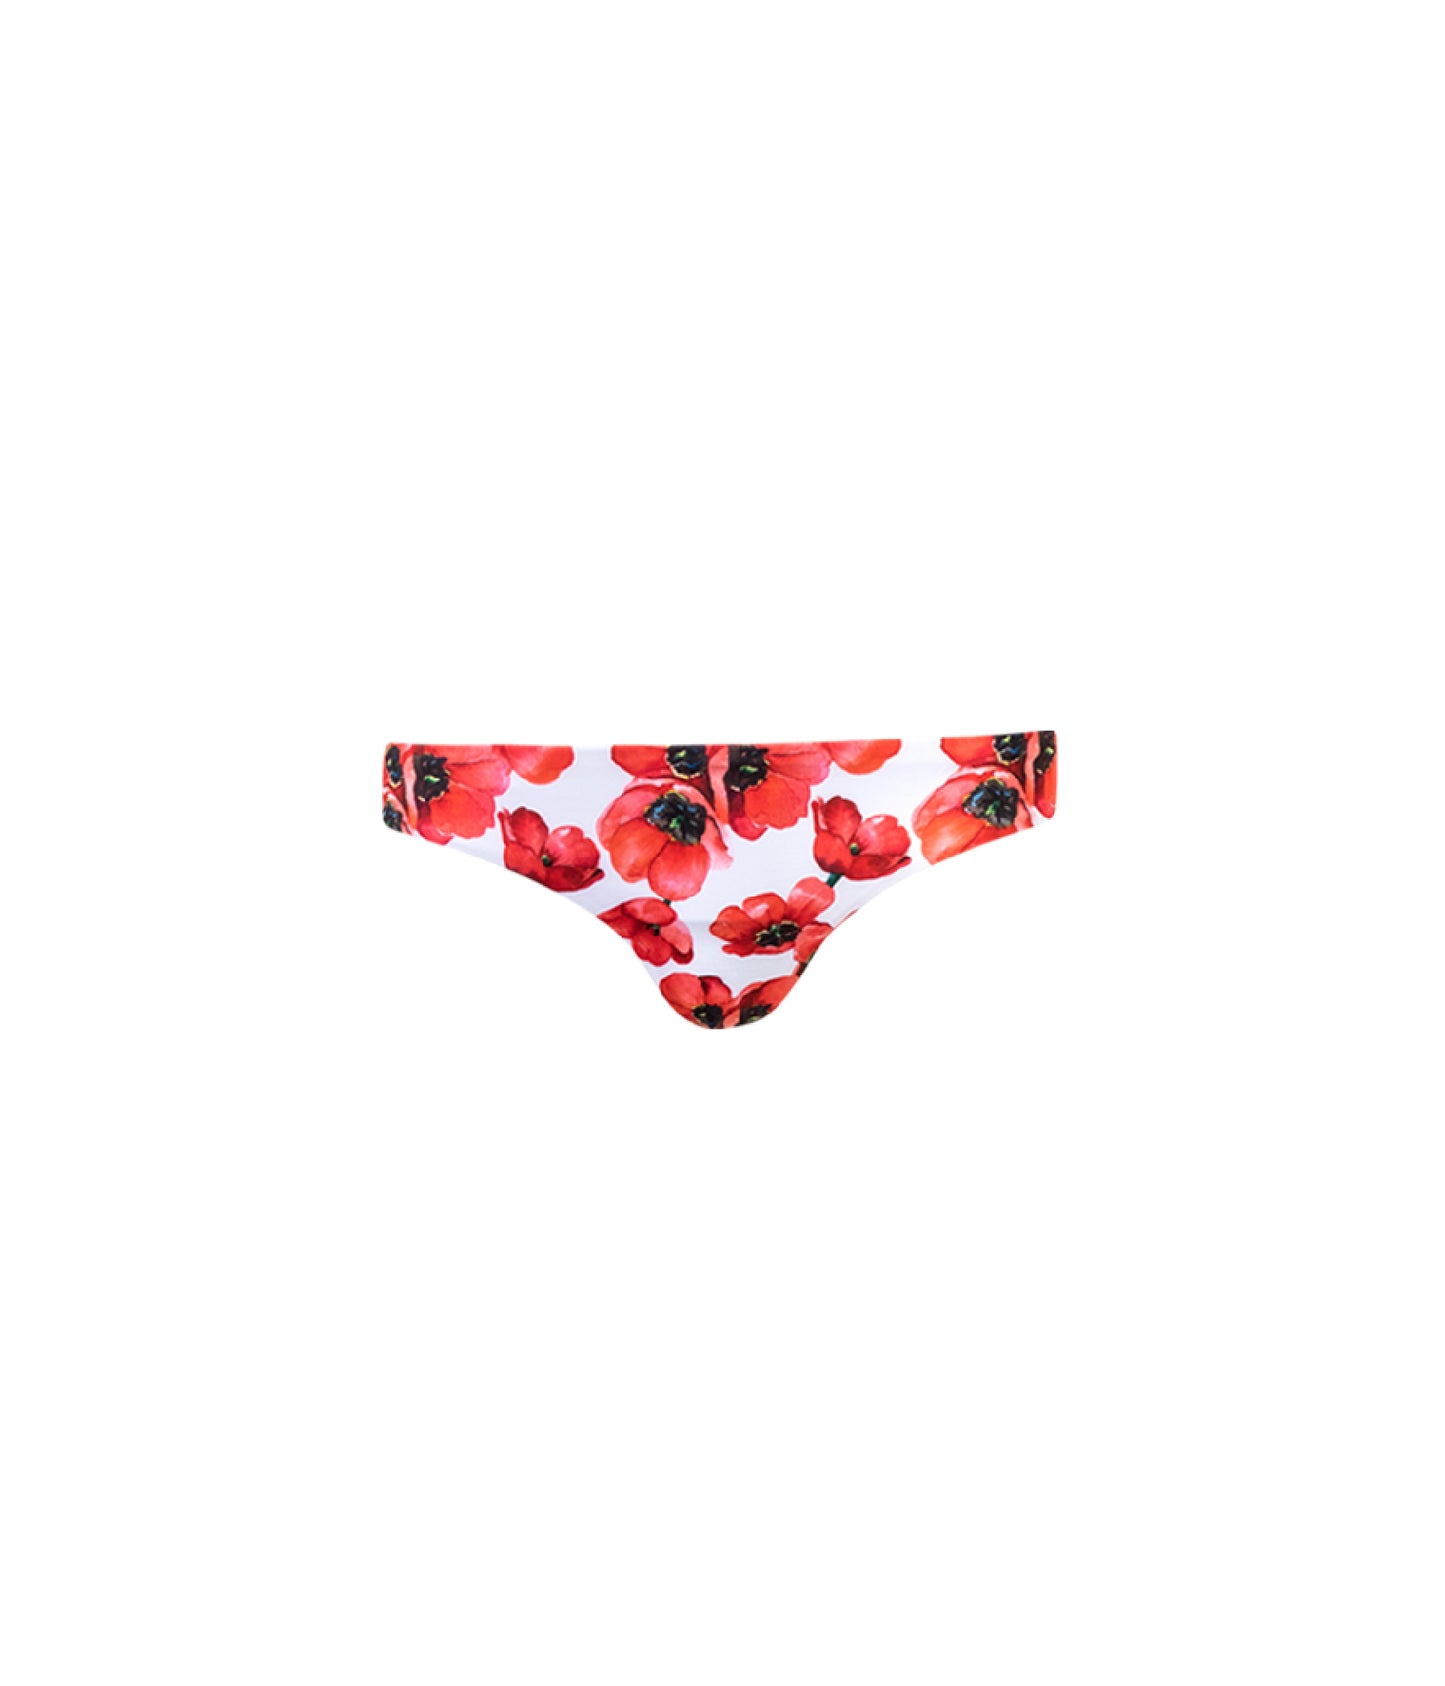 Verdelimon - Bikini Bottom - Tunas - Printed - Amapolas - Front